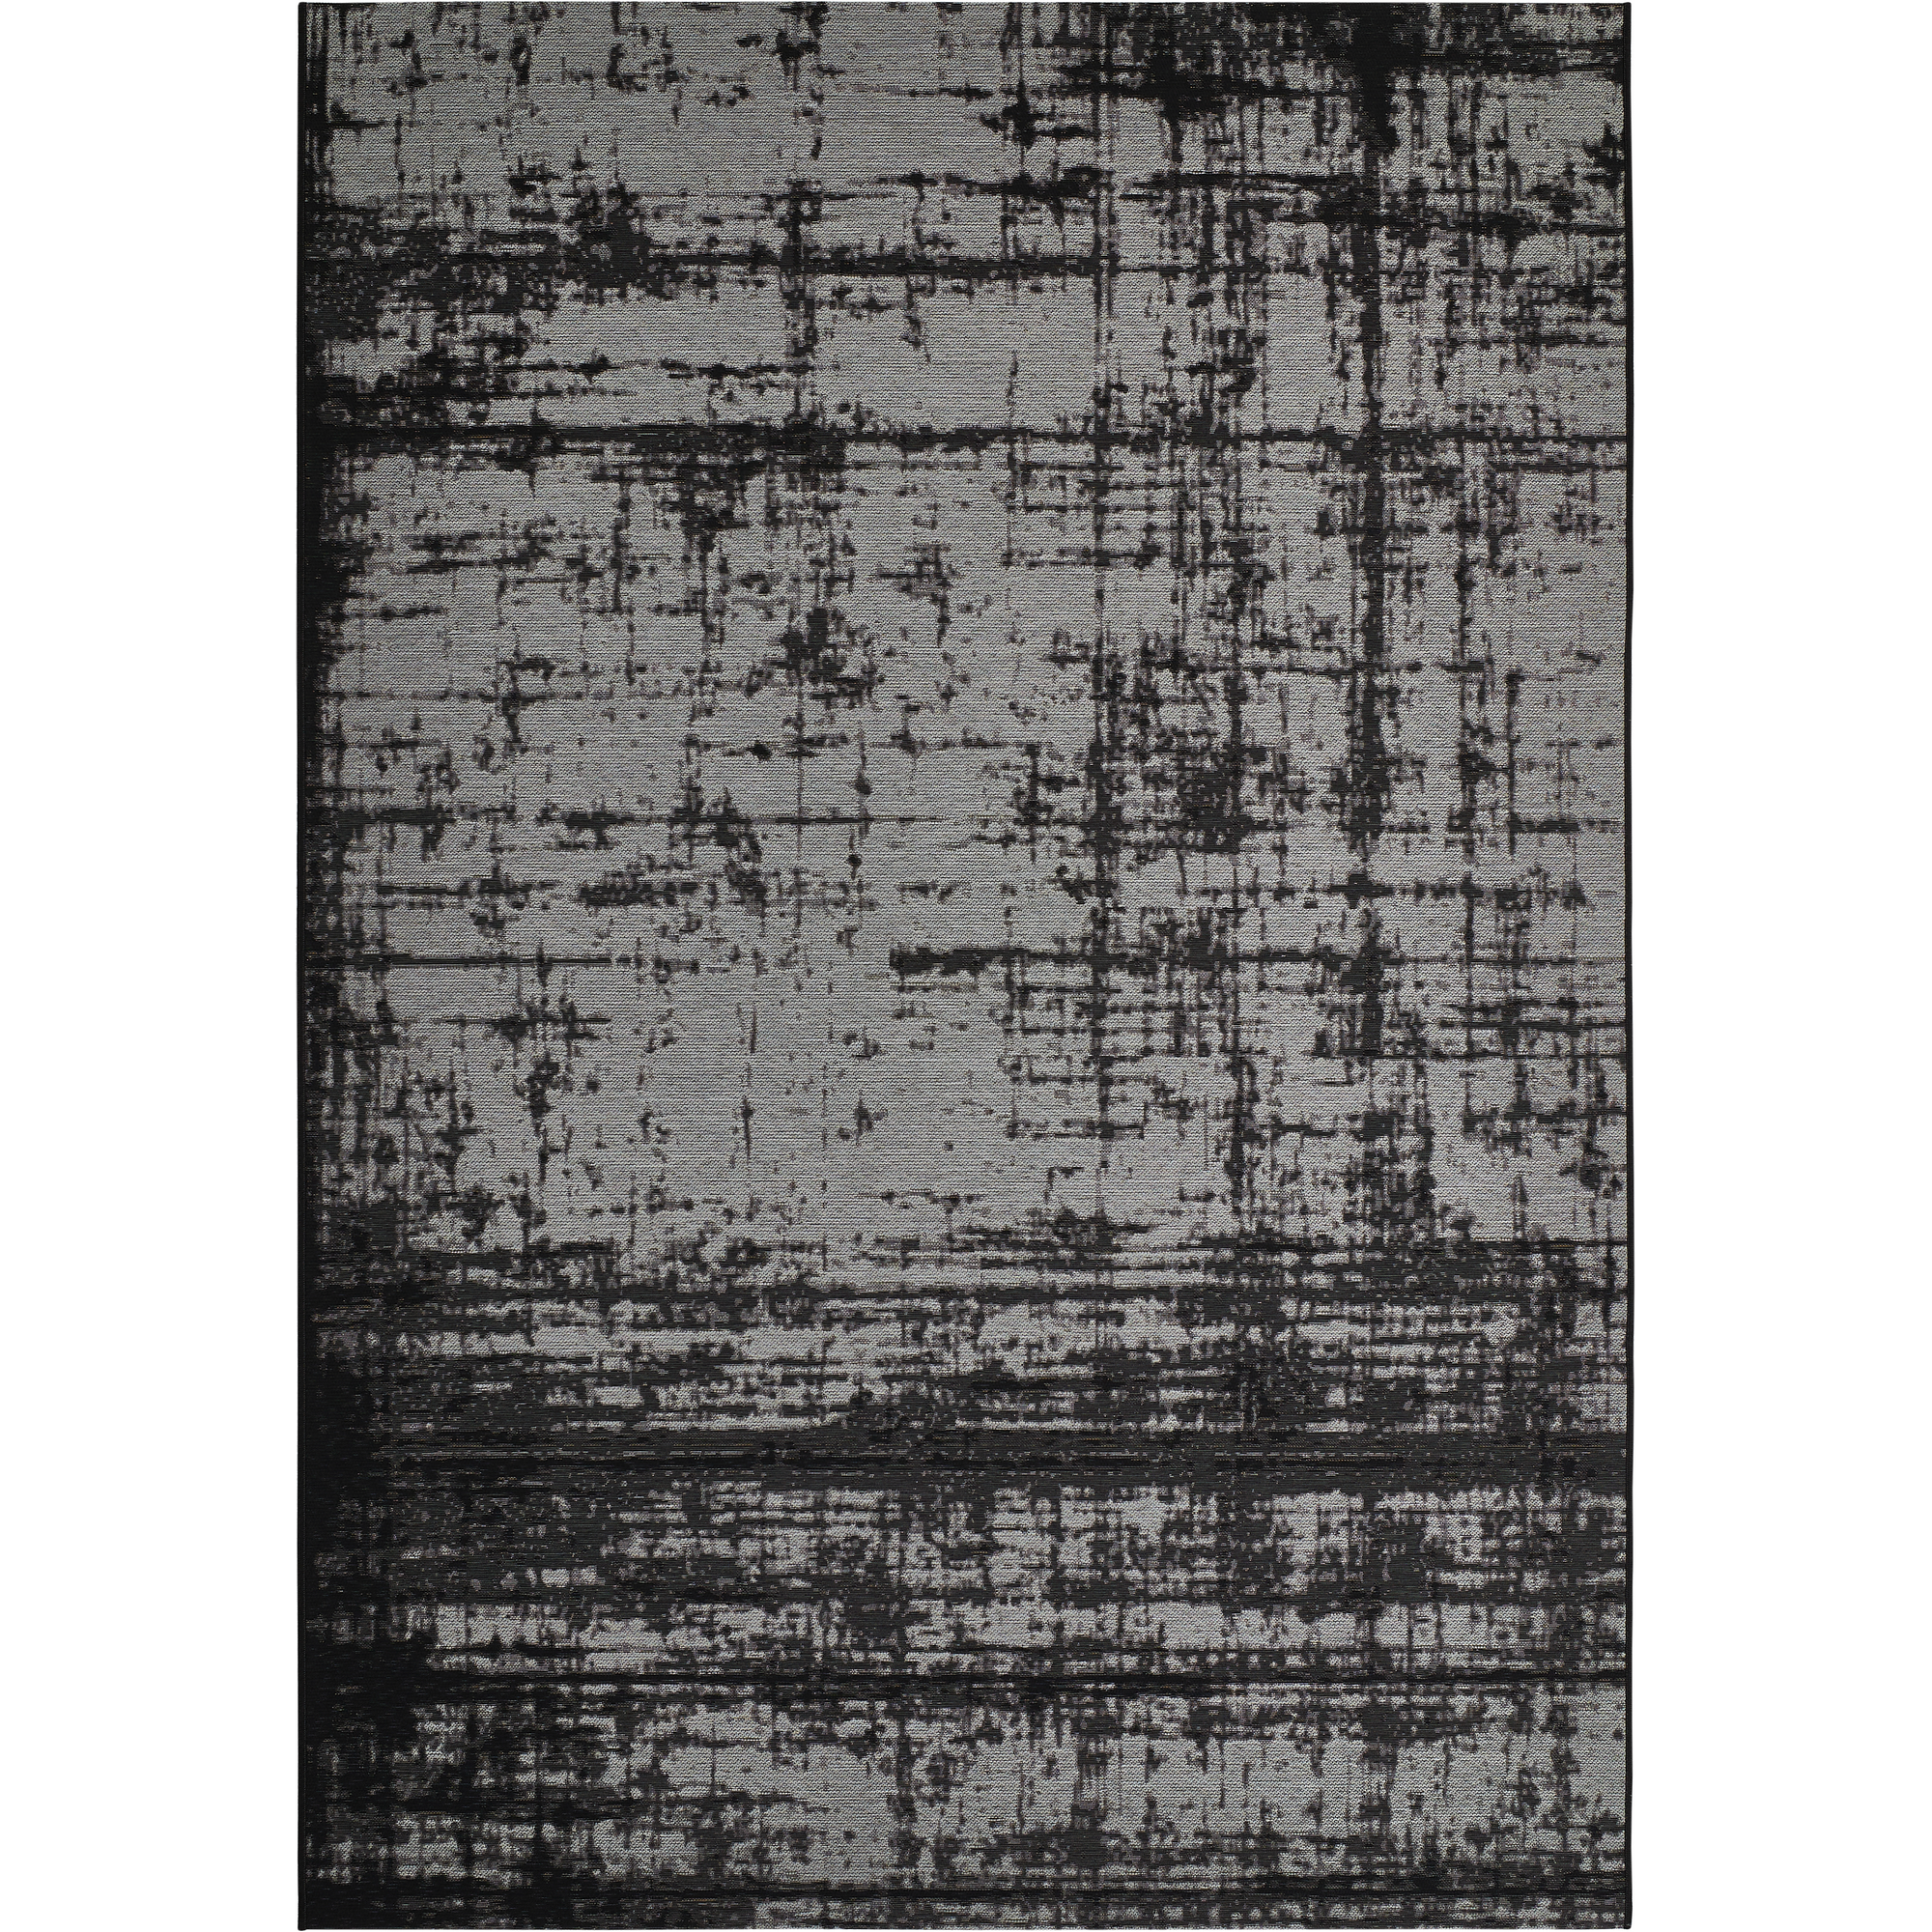 Teppich 'Pablo' grau 123 x 180 cm + product picture